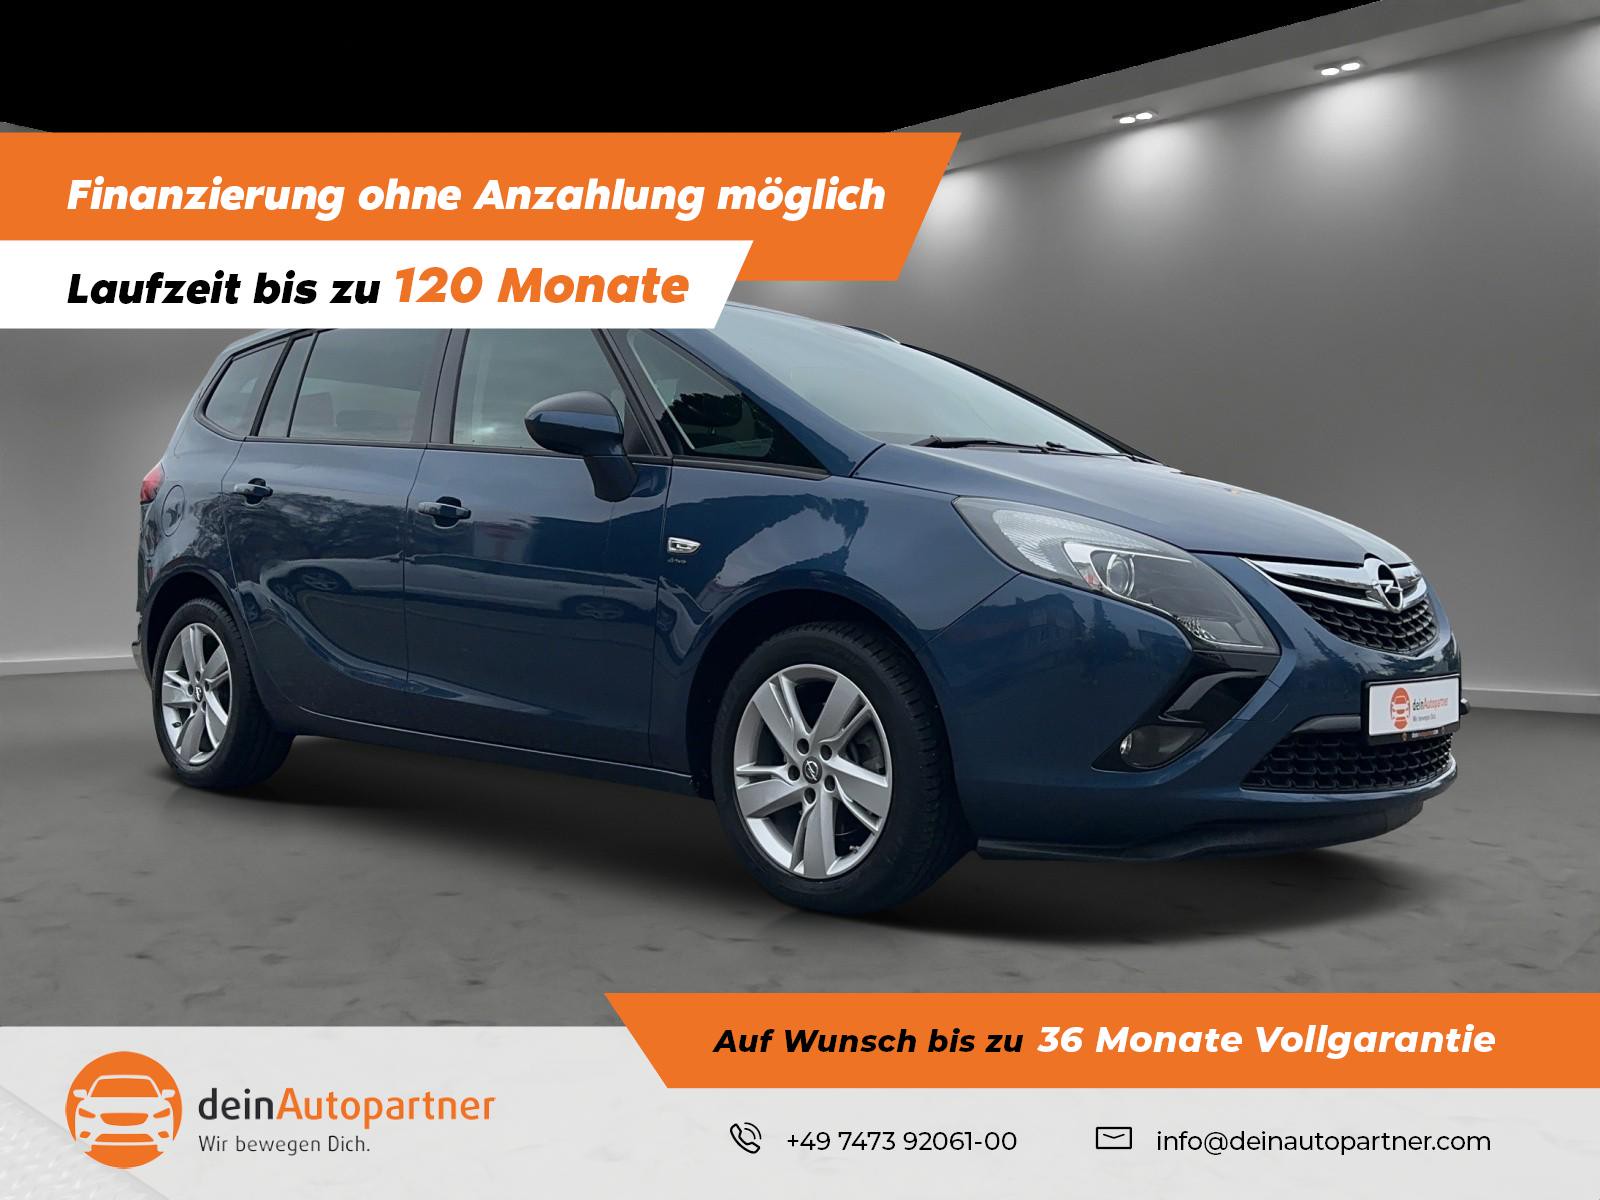 Opel Zafira C Tourer gebraucht kaufen in Mössingen Preis 11800 eur -  Int.Nr.: 2275 VERKAUFT